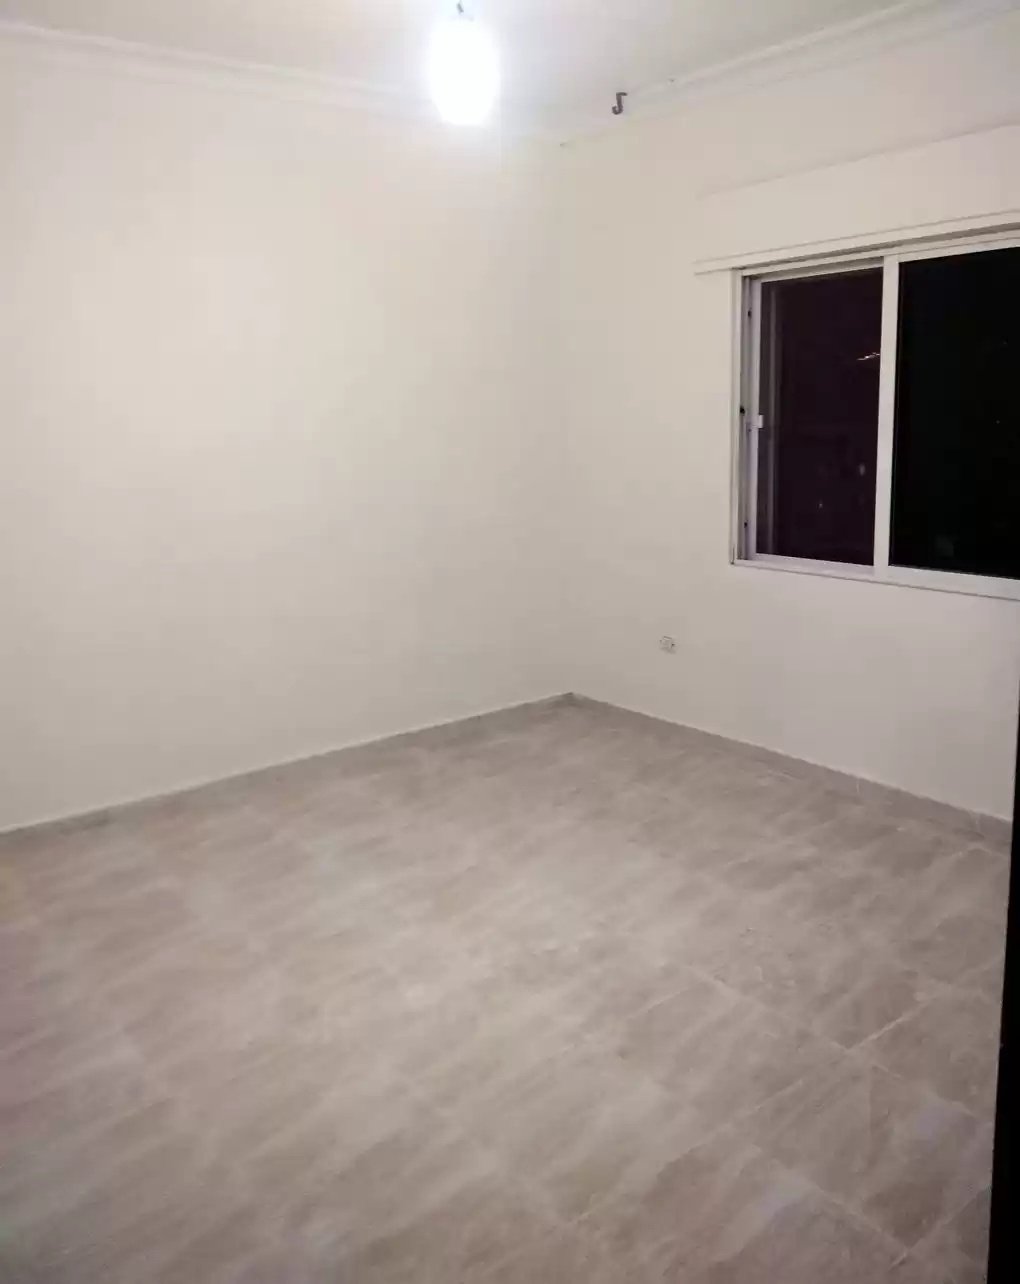 Résidentiel Propriété prête 4 chambres U / f Appartement  à vendre au Amman #26763 - 1  image 